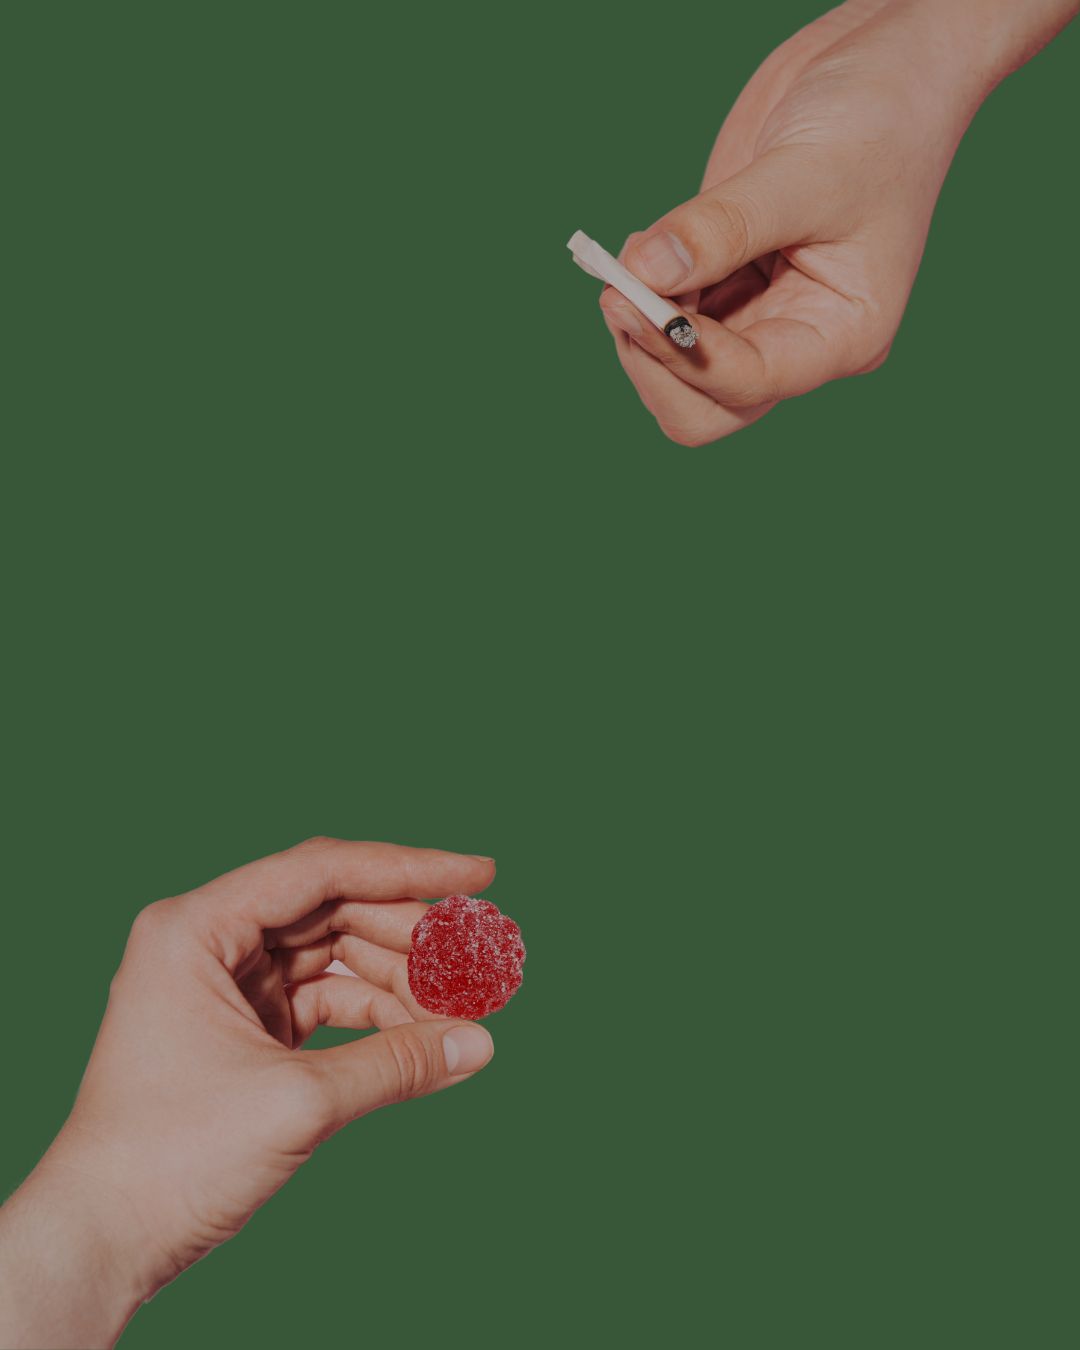 smoking cannabis vs eating edibles